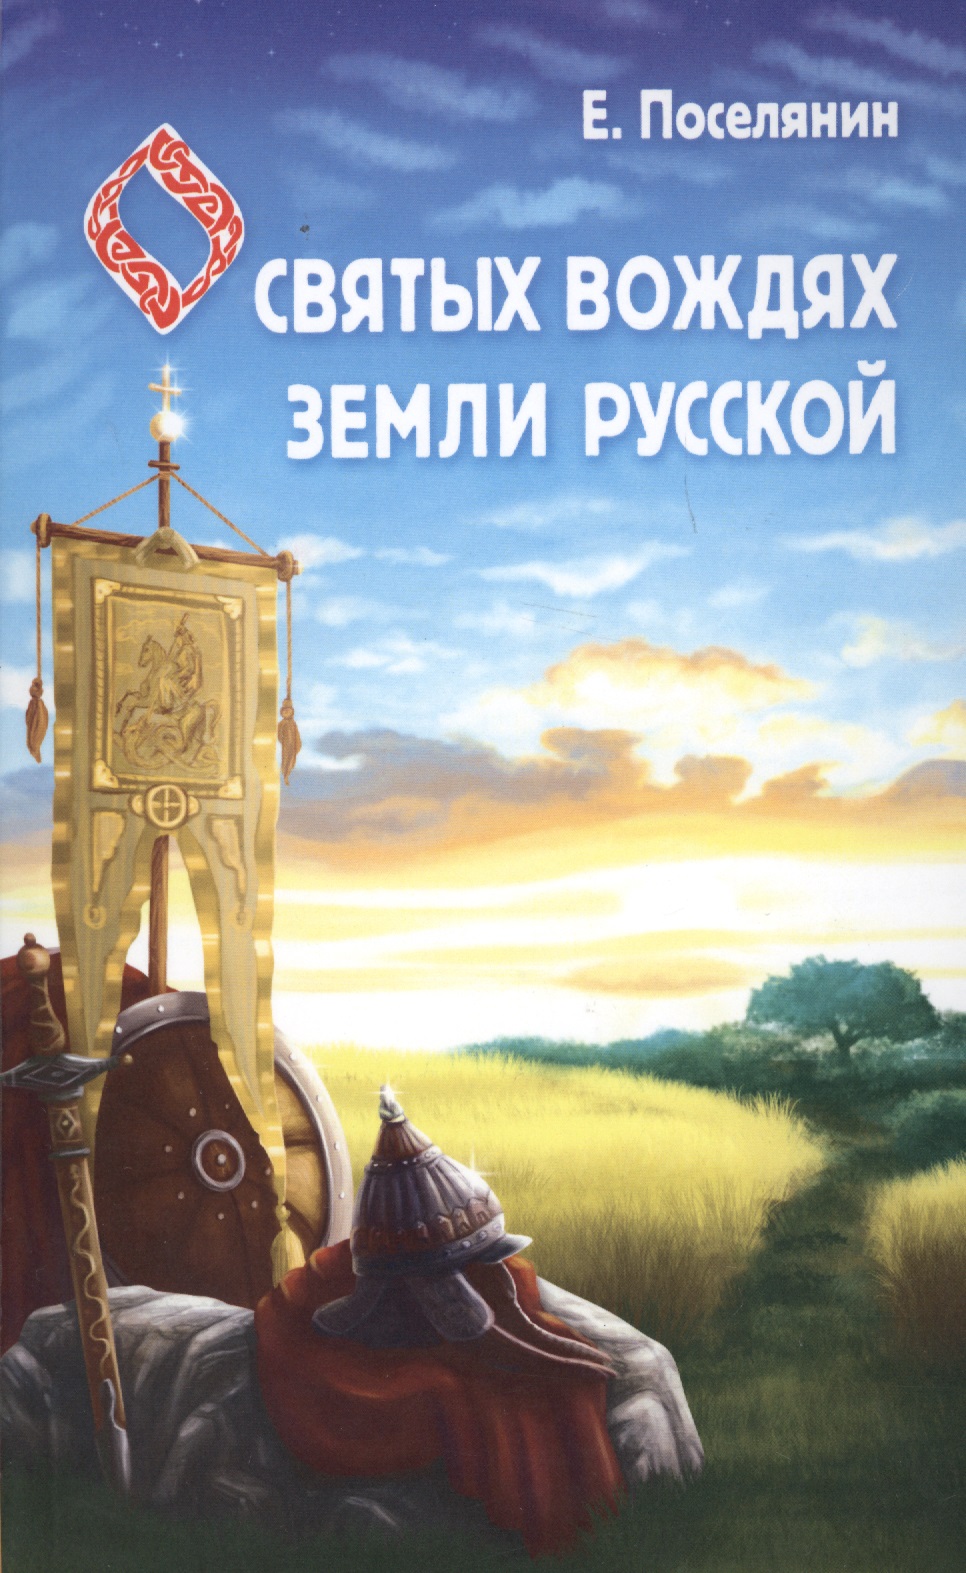 Поселянин Евгений Николаевич - Сказание о святых вождях Земли Русской